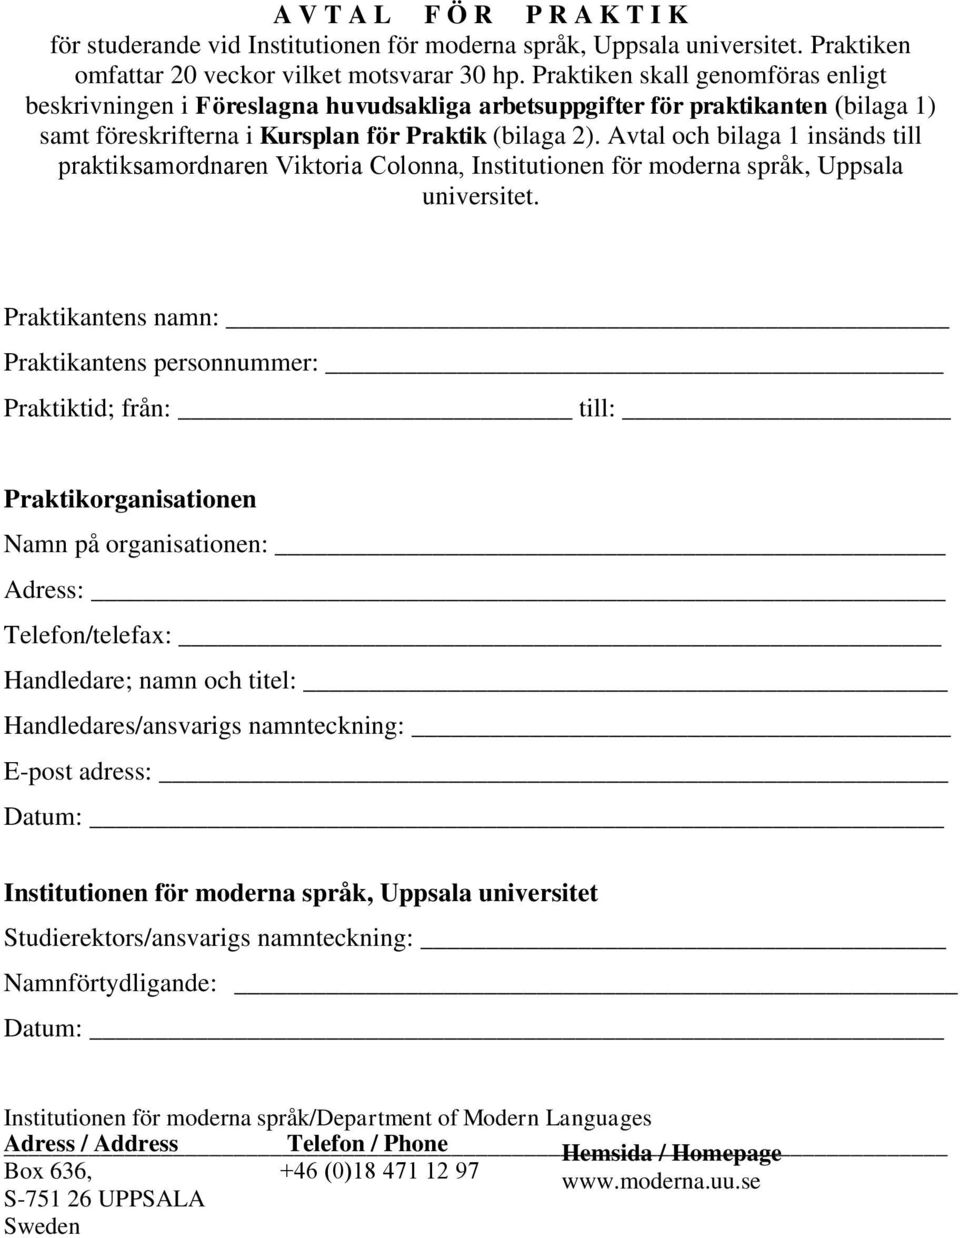 Avtal och bilaga 1 insänds till praktiksamordnaren Viktoria Colonna, Institutionen för moderna språk, Uppsala universitet.